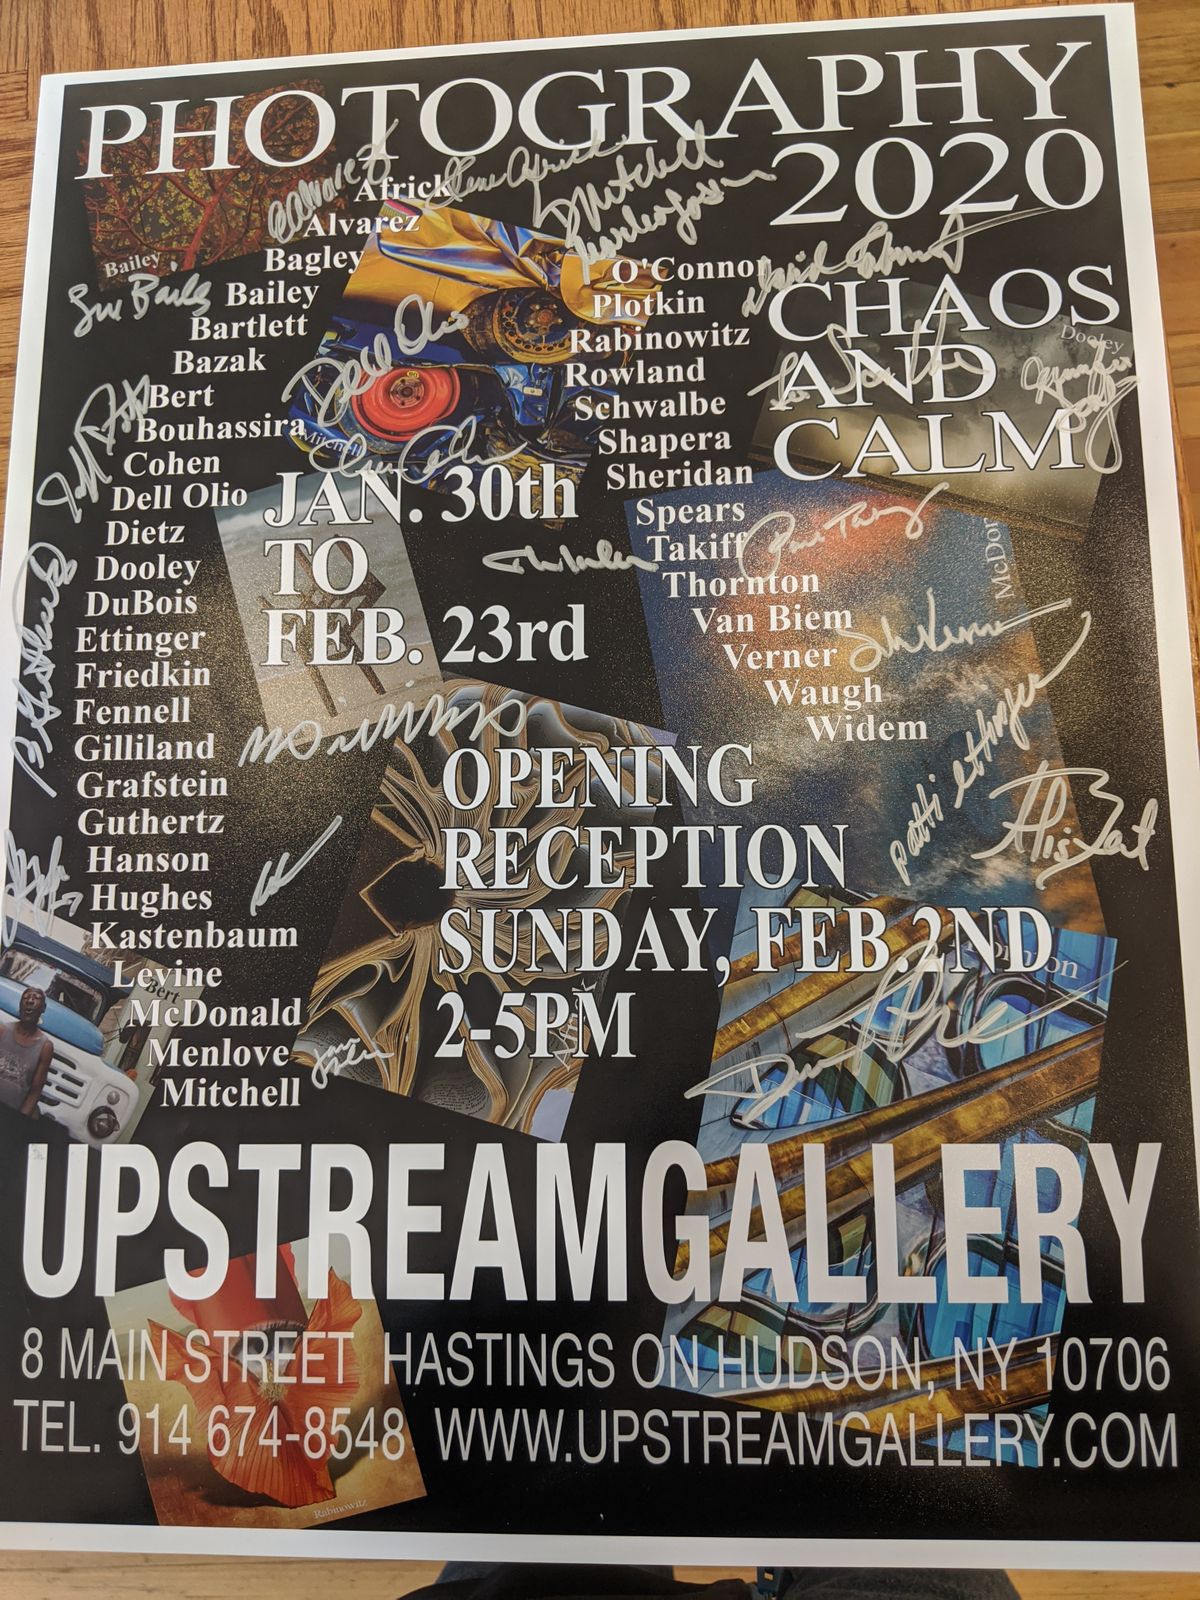 Upstream Gallery 2020